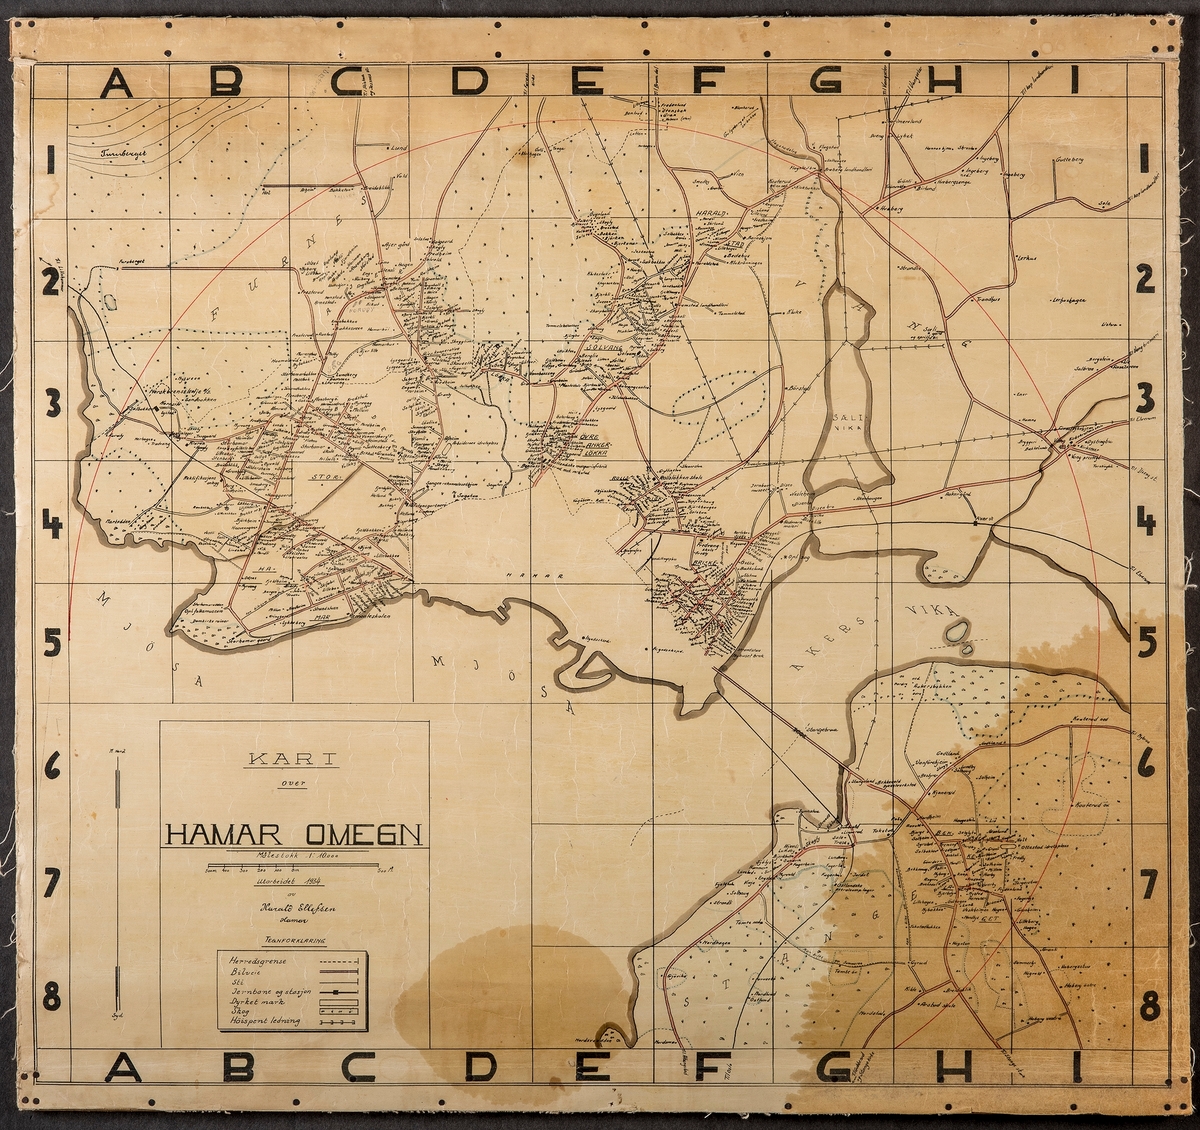 Hamar kart. Kart over Hamar og Omegn. Med steds og eiendoms navn. Utarbeidet i 1934 av Harald Ellefsen, Hamar. 
Målestokk 1 : 10000